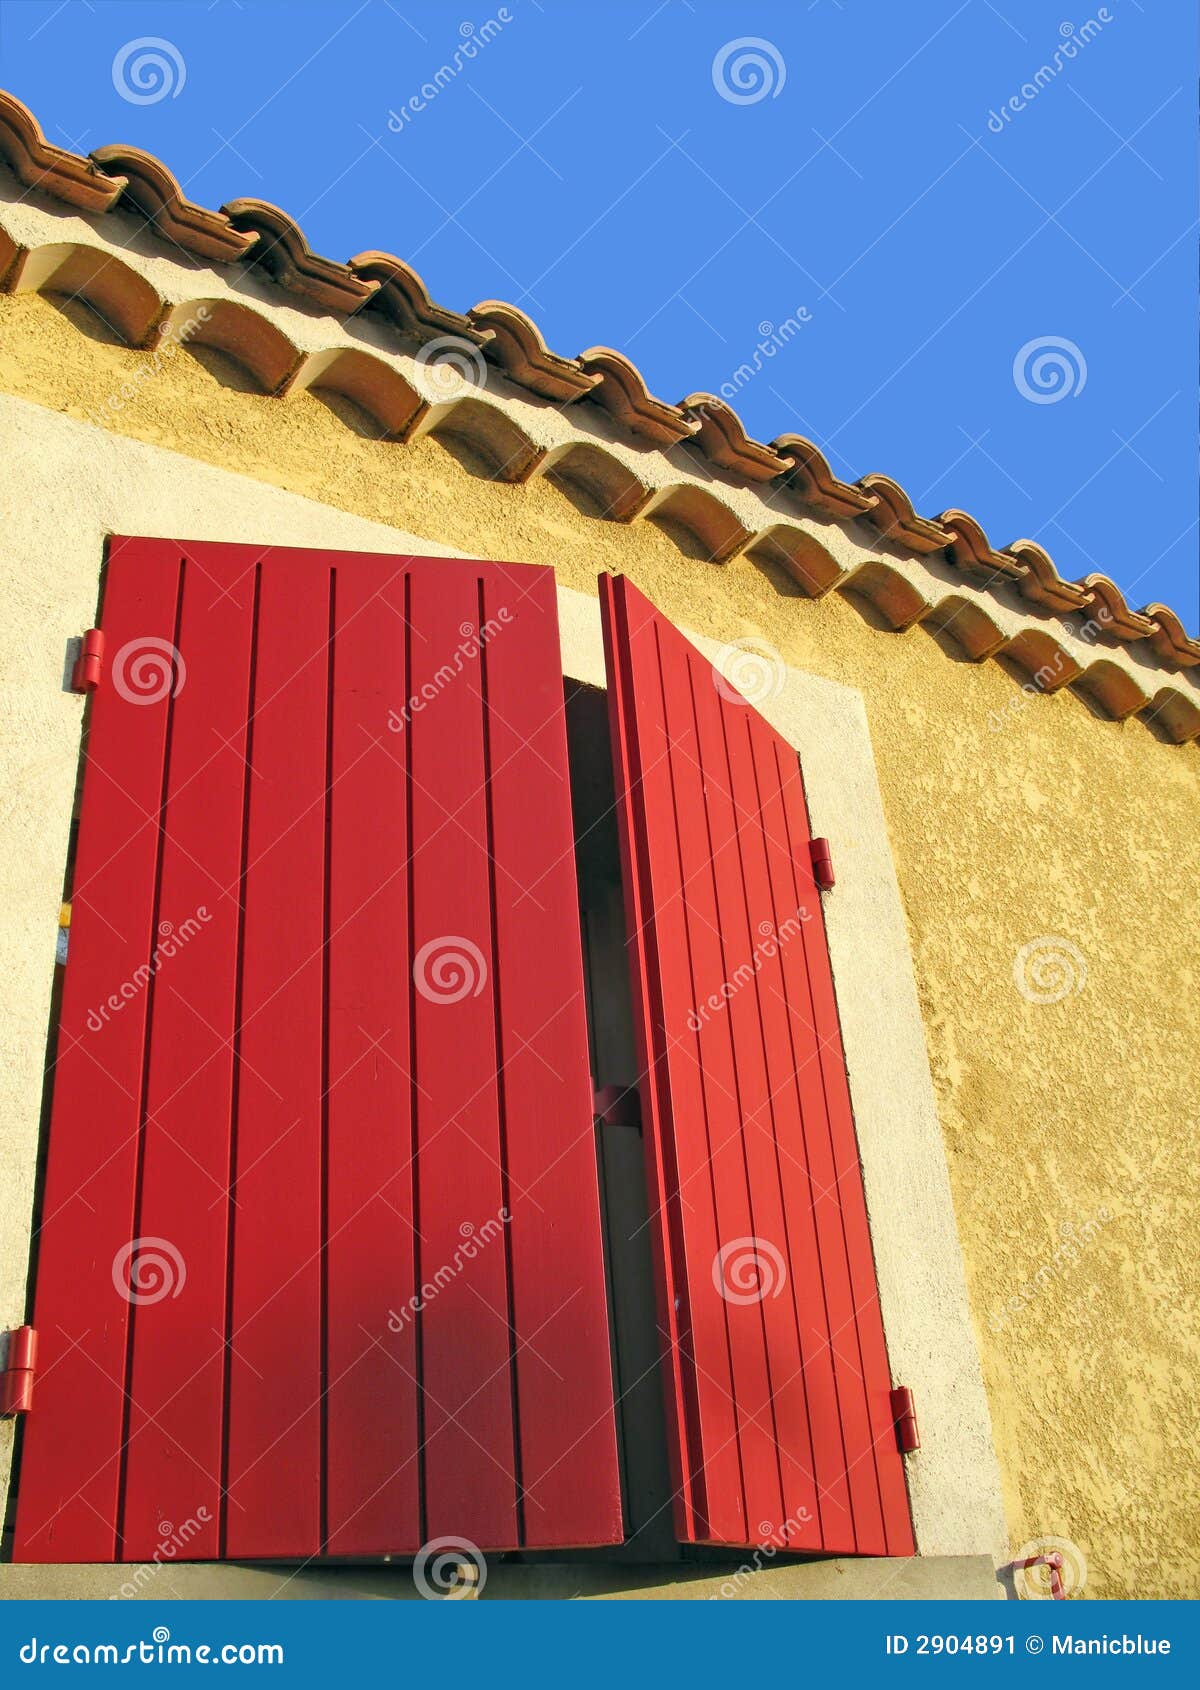 Mediterrane kleur. Abstract architecturaal schot van een hoekige buitenmuur met heldere rode blinden tegen een blauwe hemel.